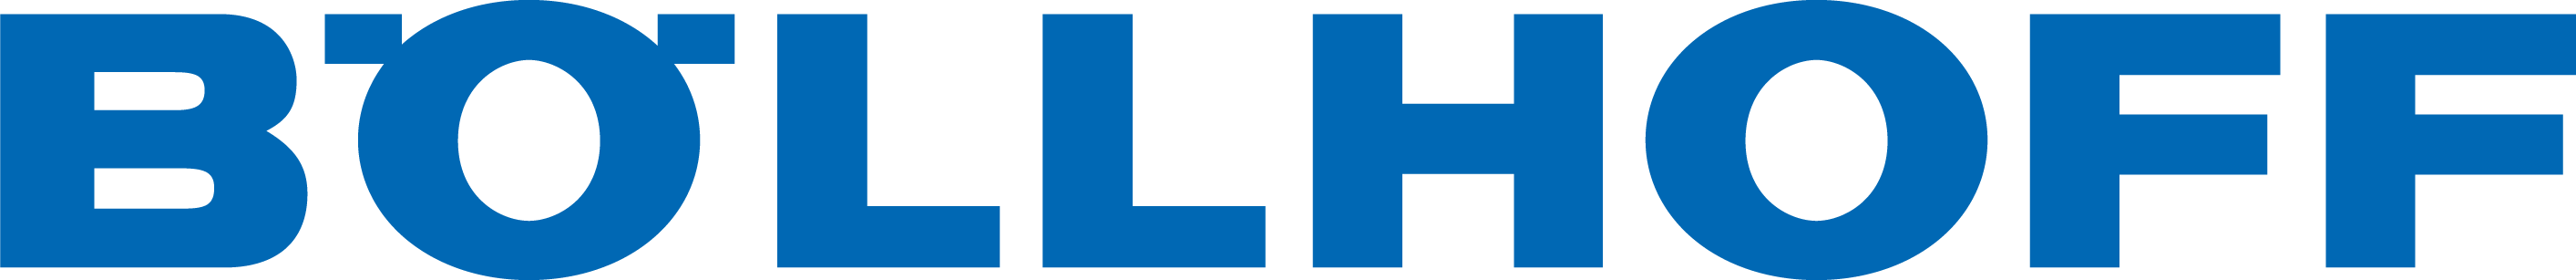 Boellhoff_Logo-4c